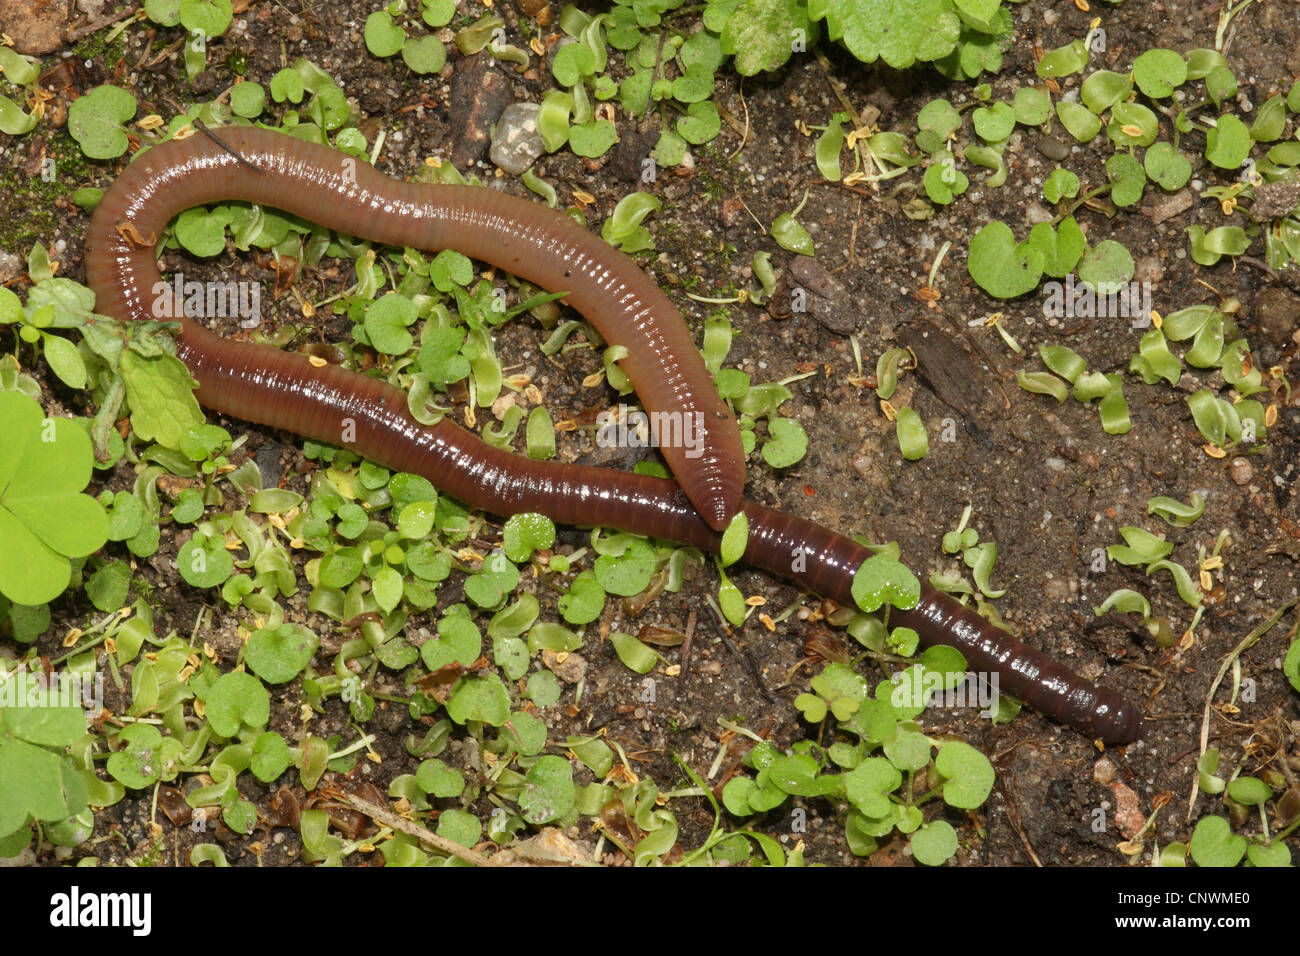 Ver de terre commun, ver de terre, ver de lob, rosée worm, Ver squirreltail twachel, (Lumbricus terrestris), sur sol humide Banque D'Images